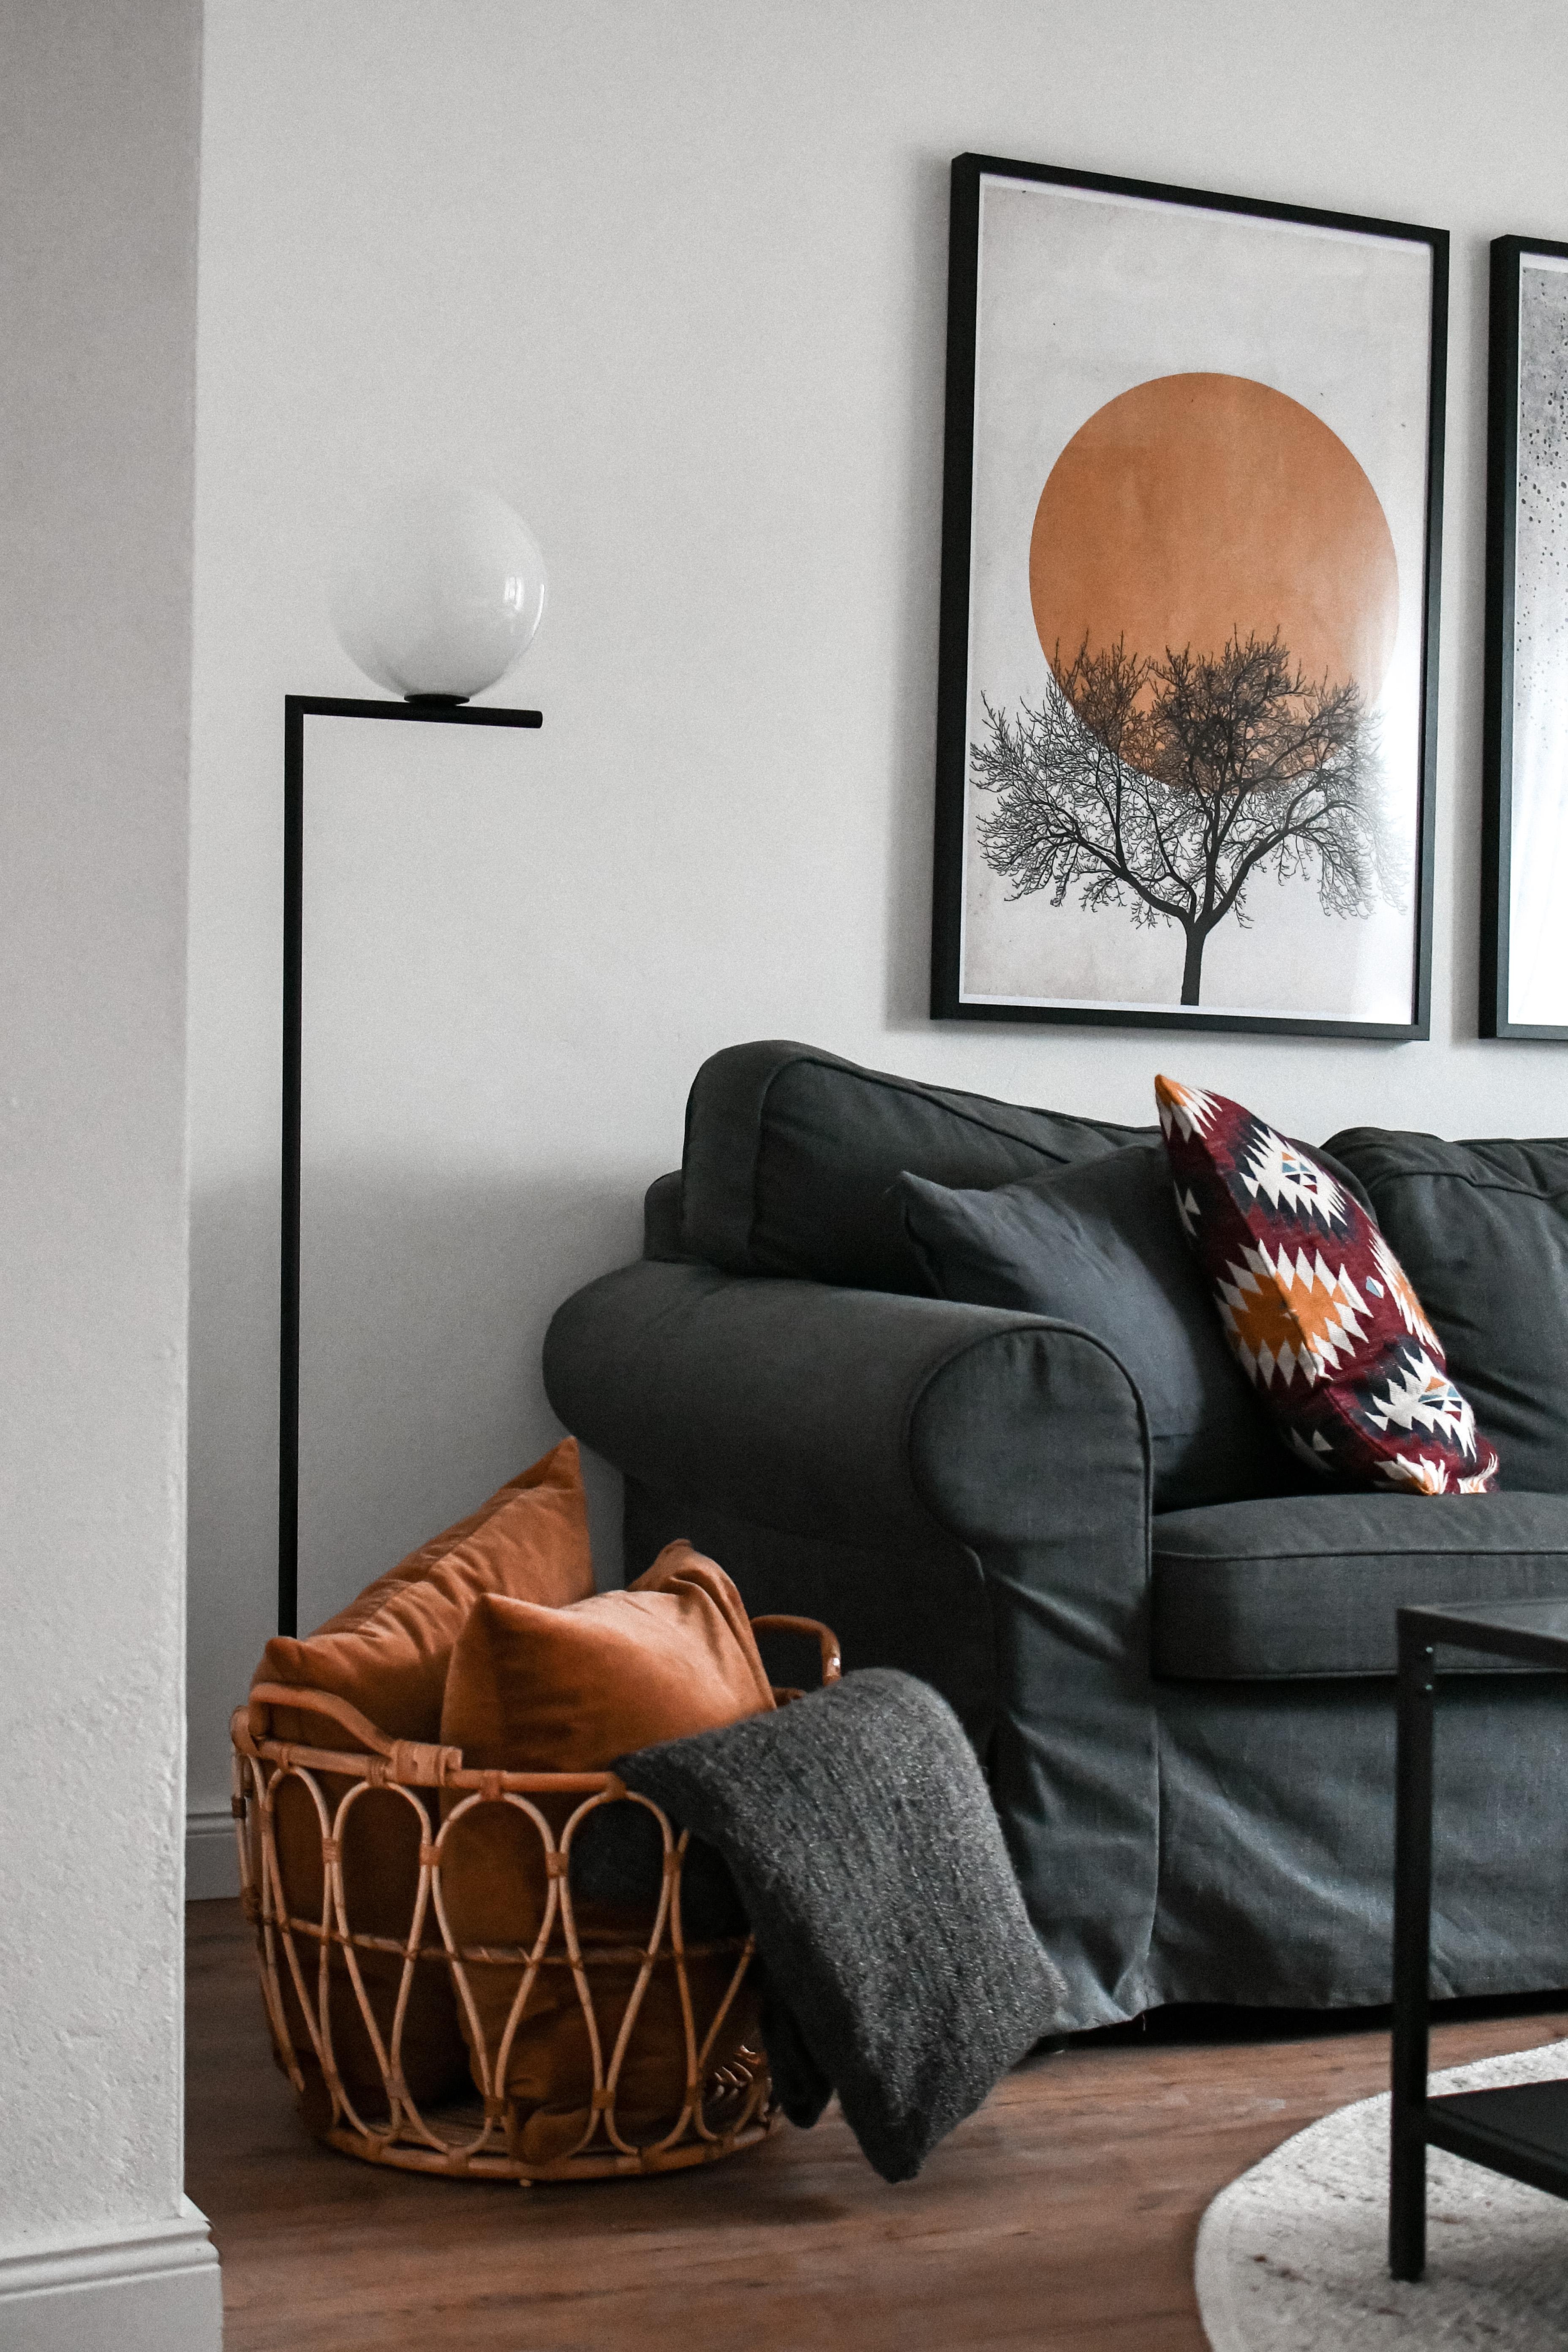 Verliebt in unsere neue Stehlampe💕 #flos #designklassiker #wohnen #wohnzimmer #wohnideen